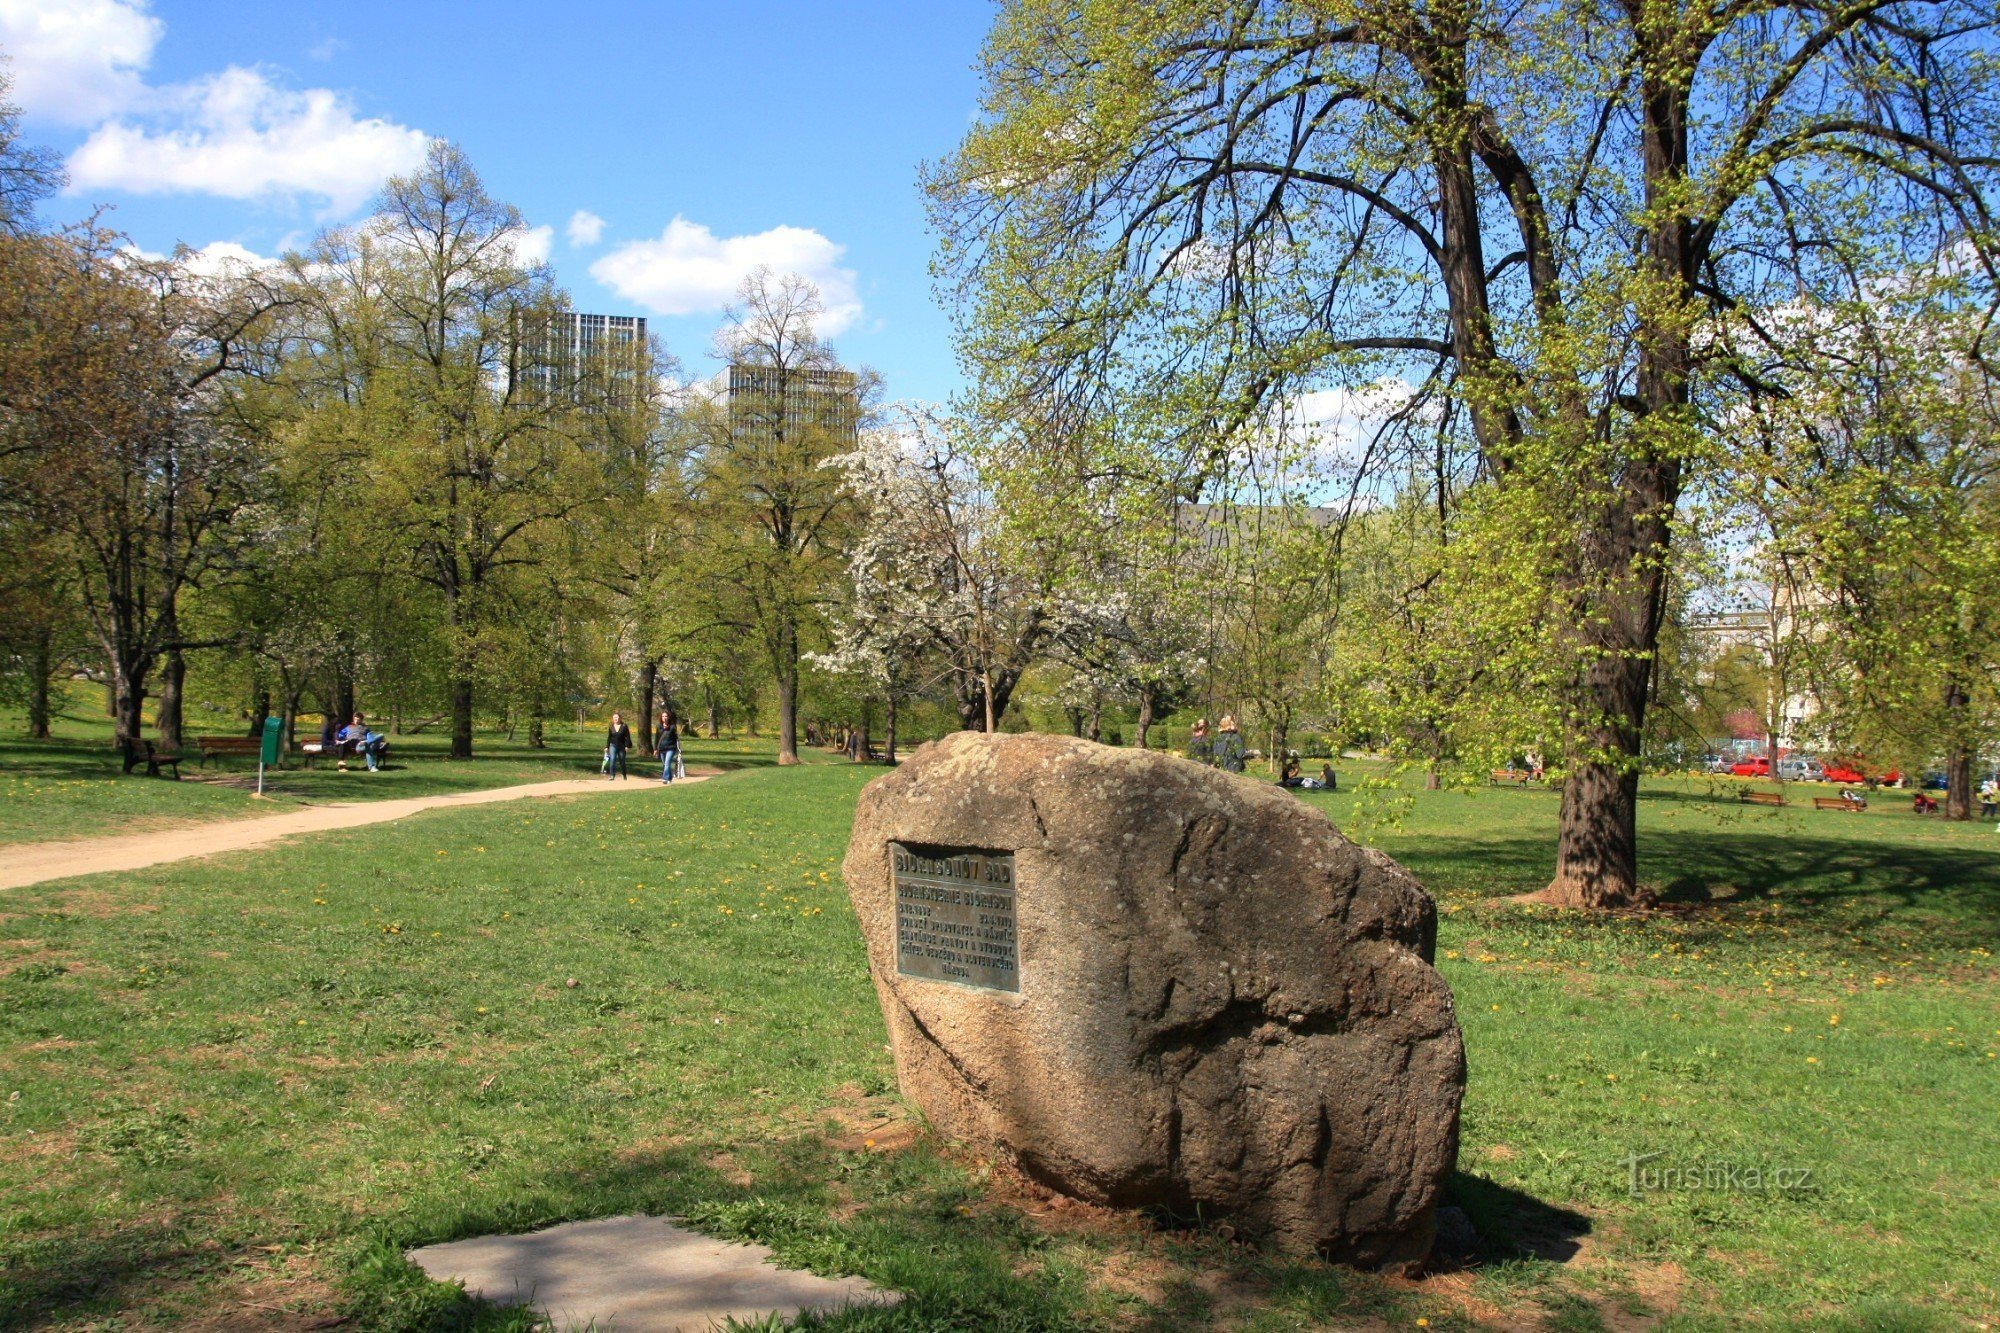 Björsen ガーデン - 記念プレートのある石